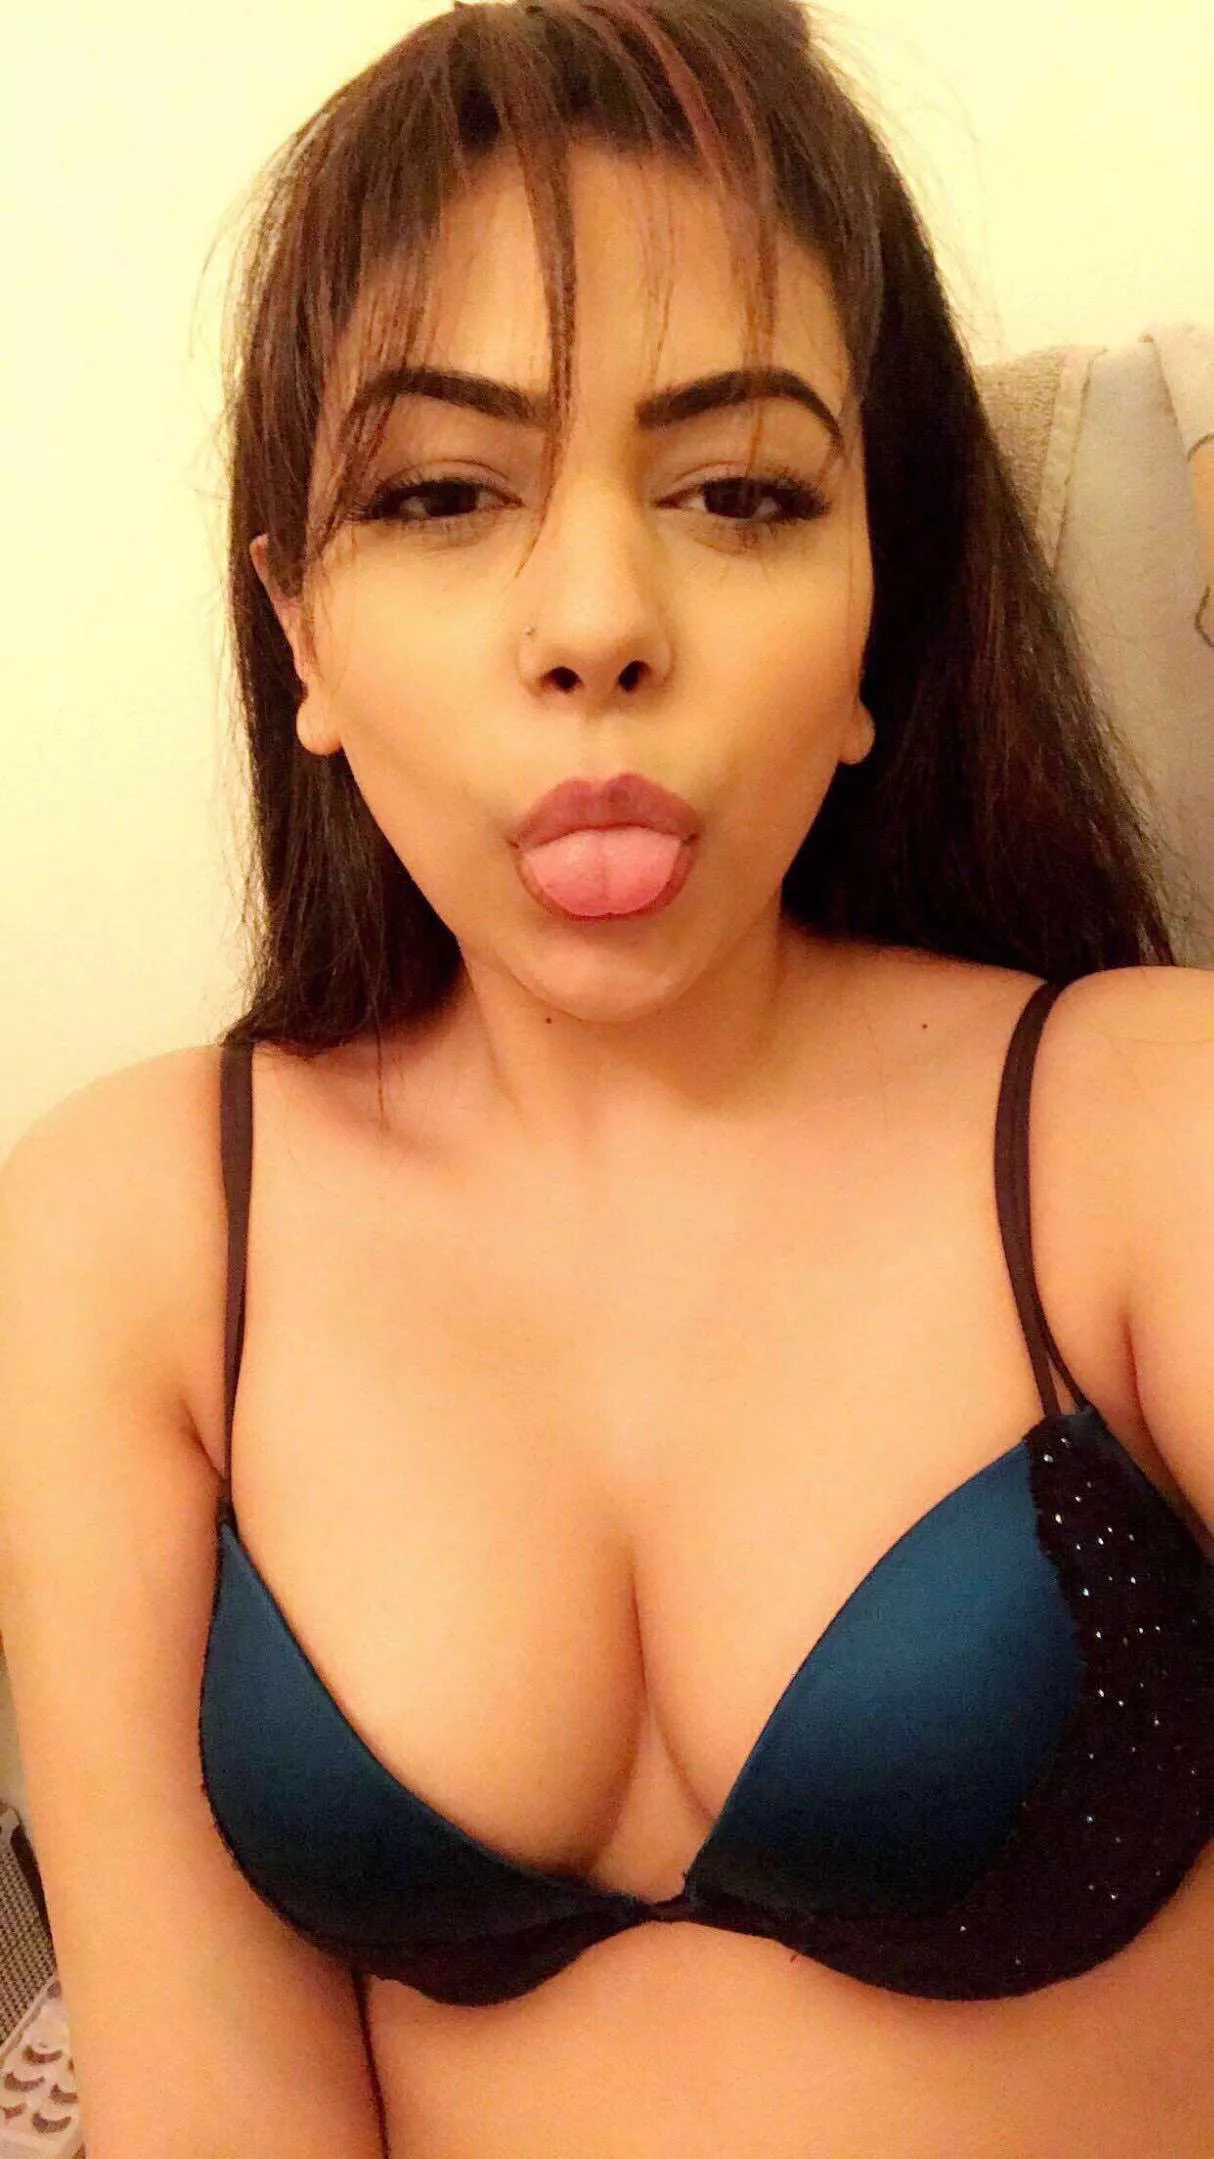 galleries busty bra cleavage selfie